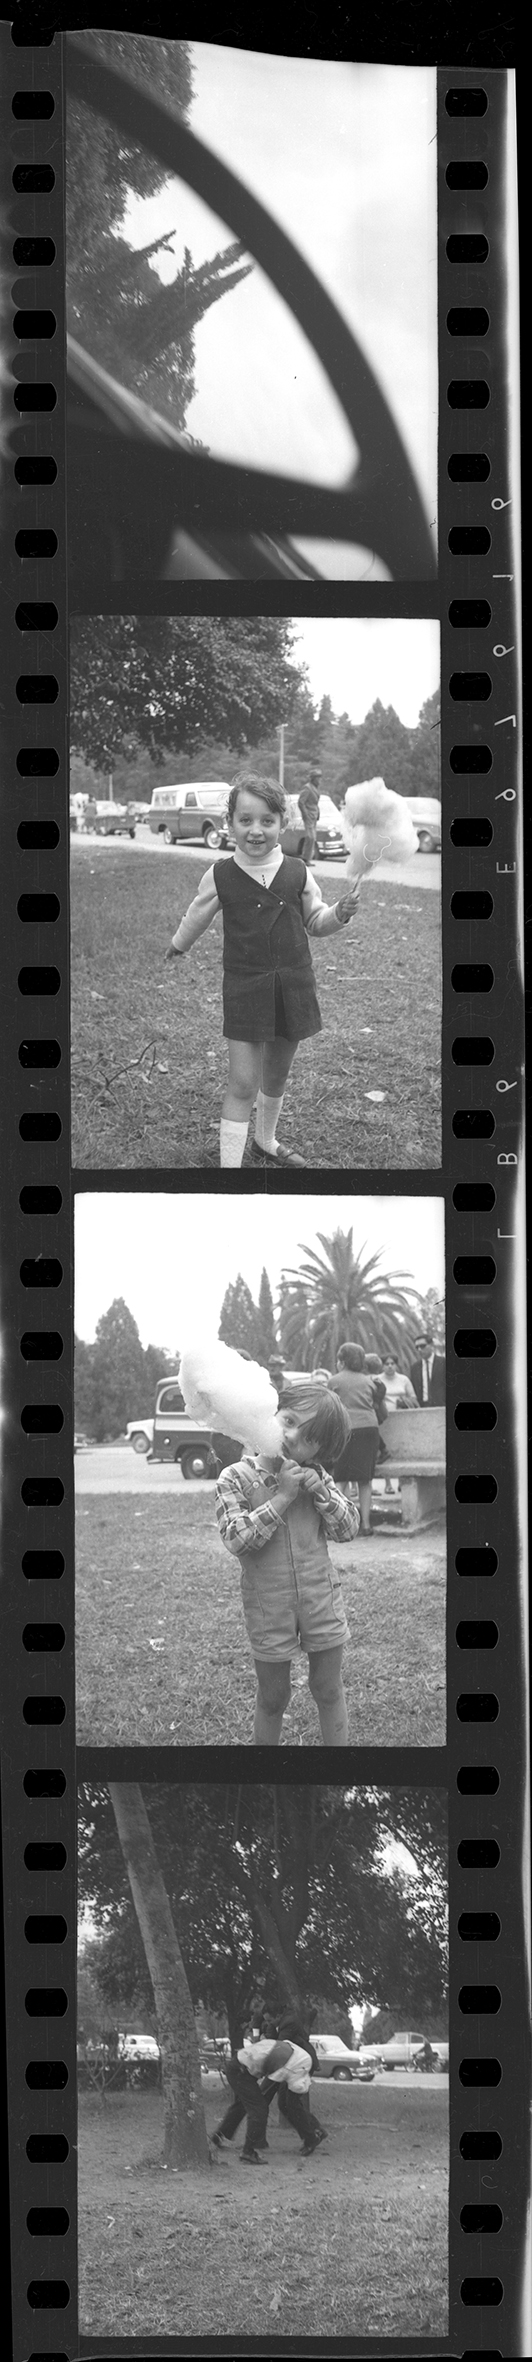 REGISTRO DE FOTOS. Los cuatro primeros fotogramas que captó Gerardo Gramajo (aficionado a la fotografía hasta esa fecha). De la serenidad y la inocencia de los niños que juegan en el parque a la tragedia, en un instante.